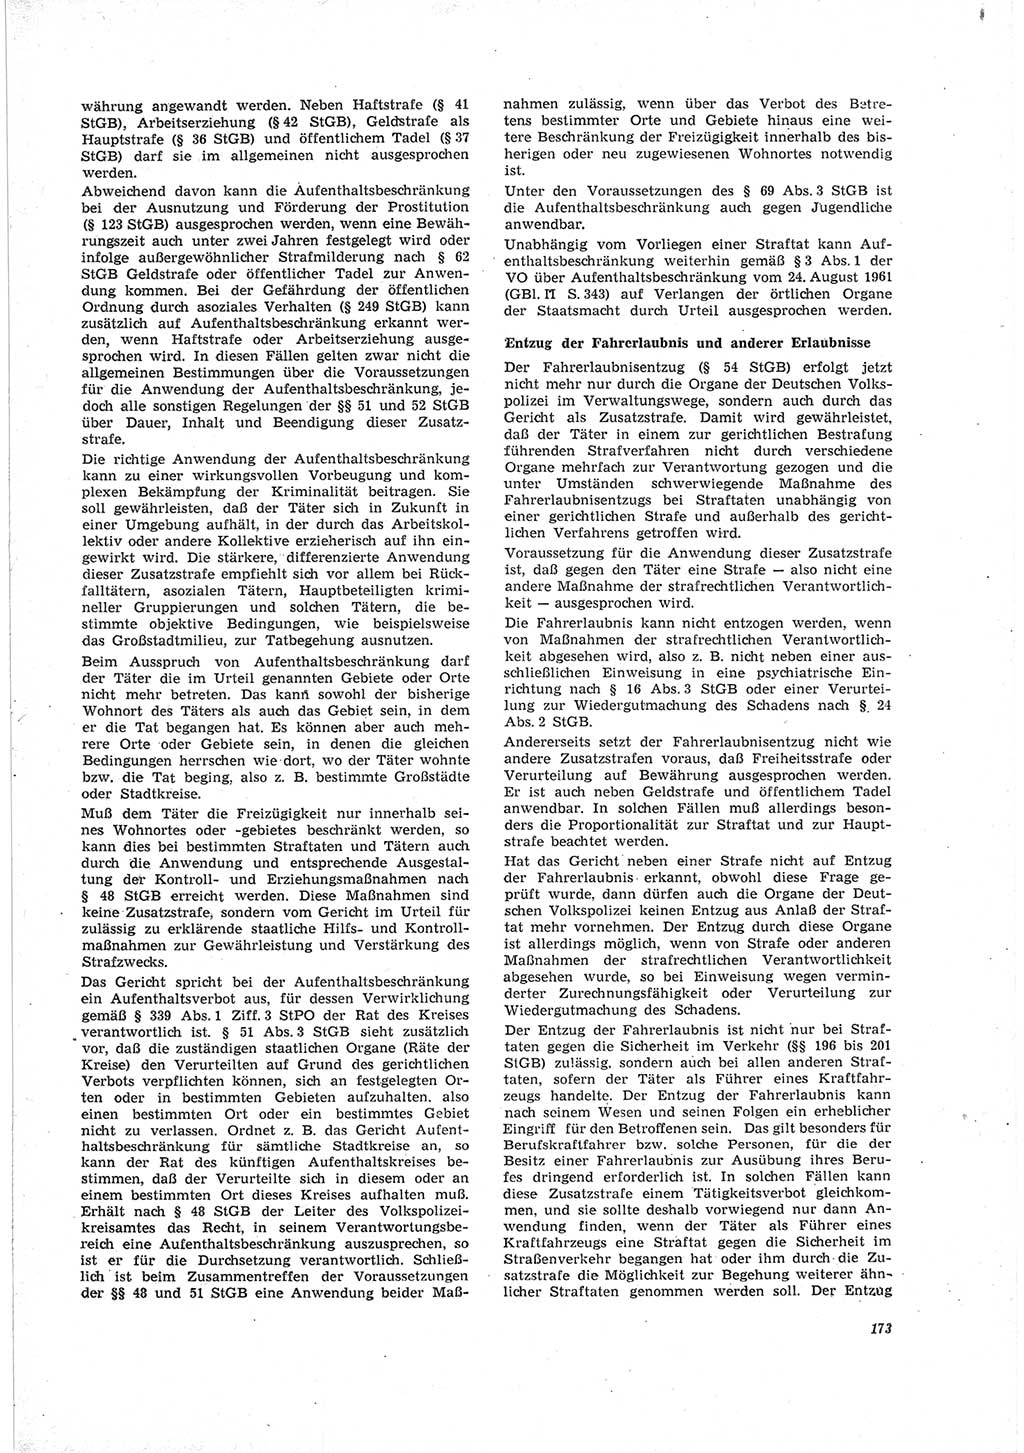 Neue Justiz (NJ), Zeitschrift für Recht und Rechtswissenschaft [Deutsche Demokratische Republik (DDR)], 23. Jahrgang 1969, Seite 173 (NJ DDR 1969, S. 173)